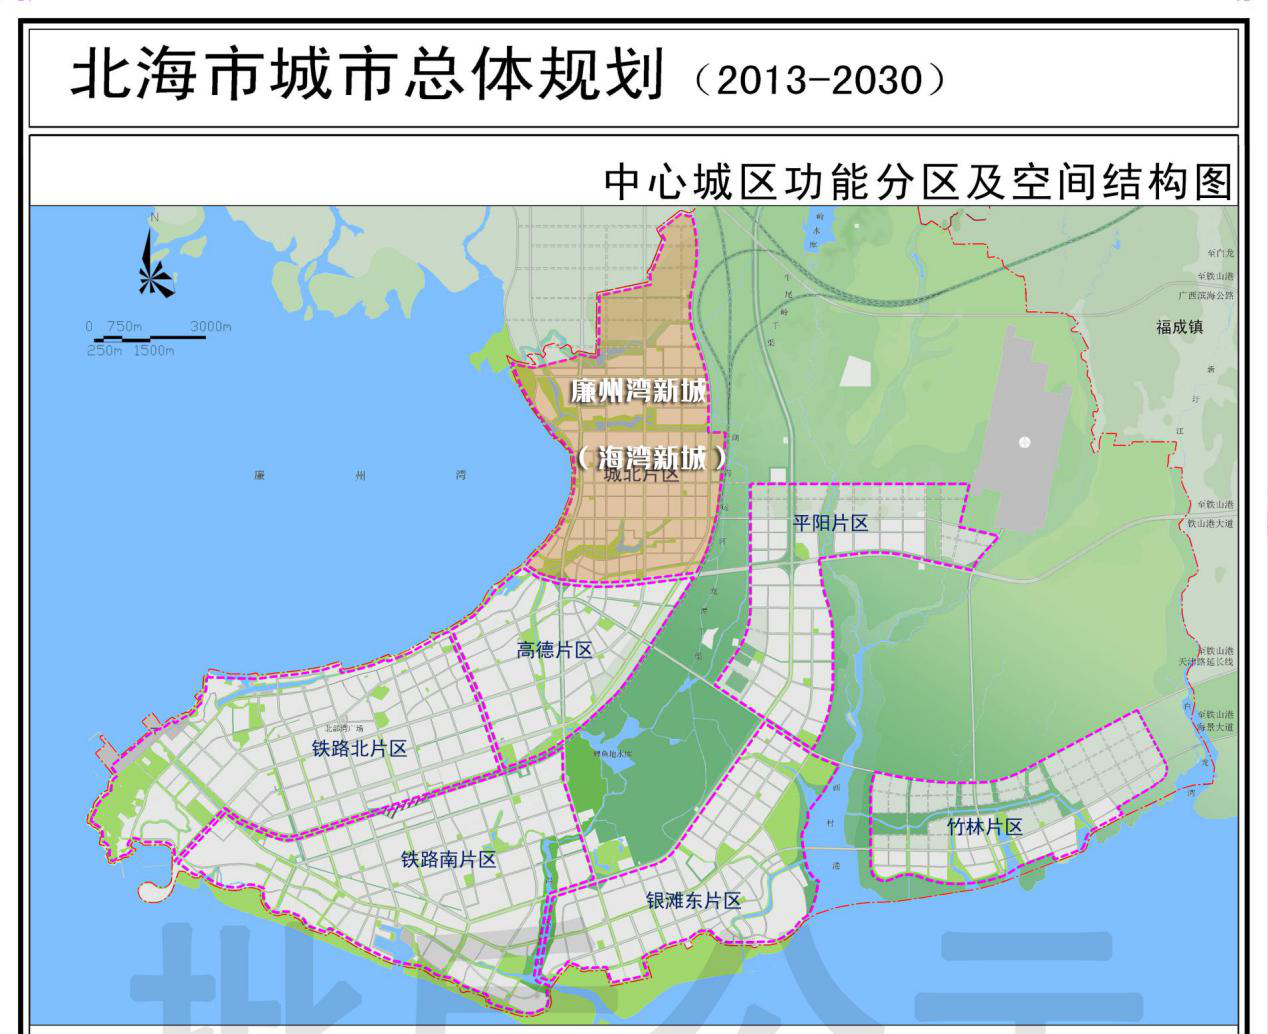 《北海市城市总体规划(2013